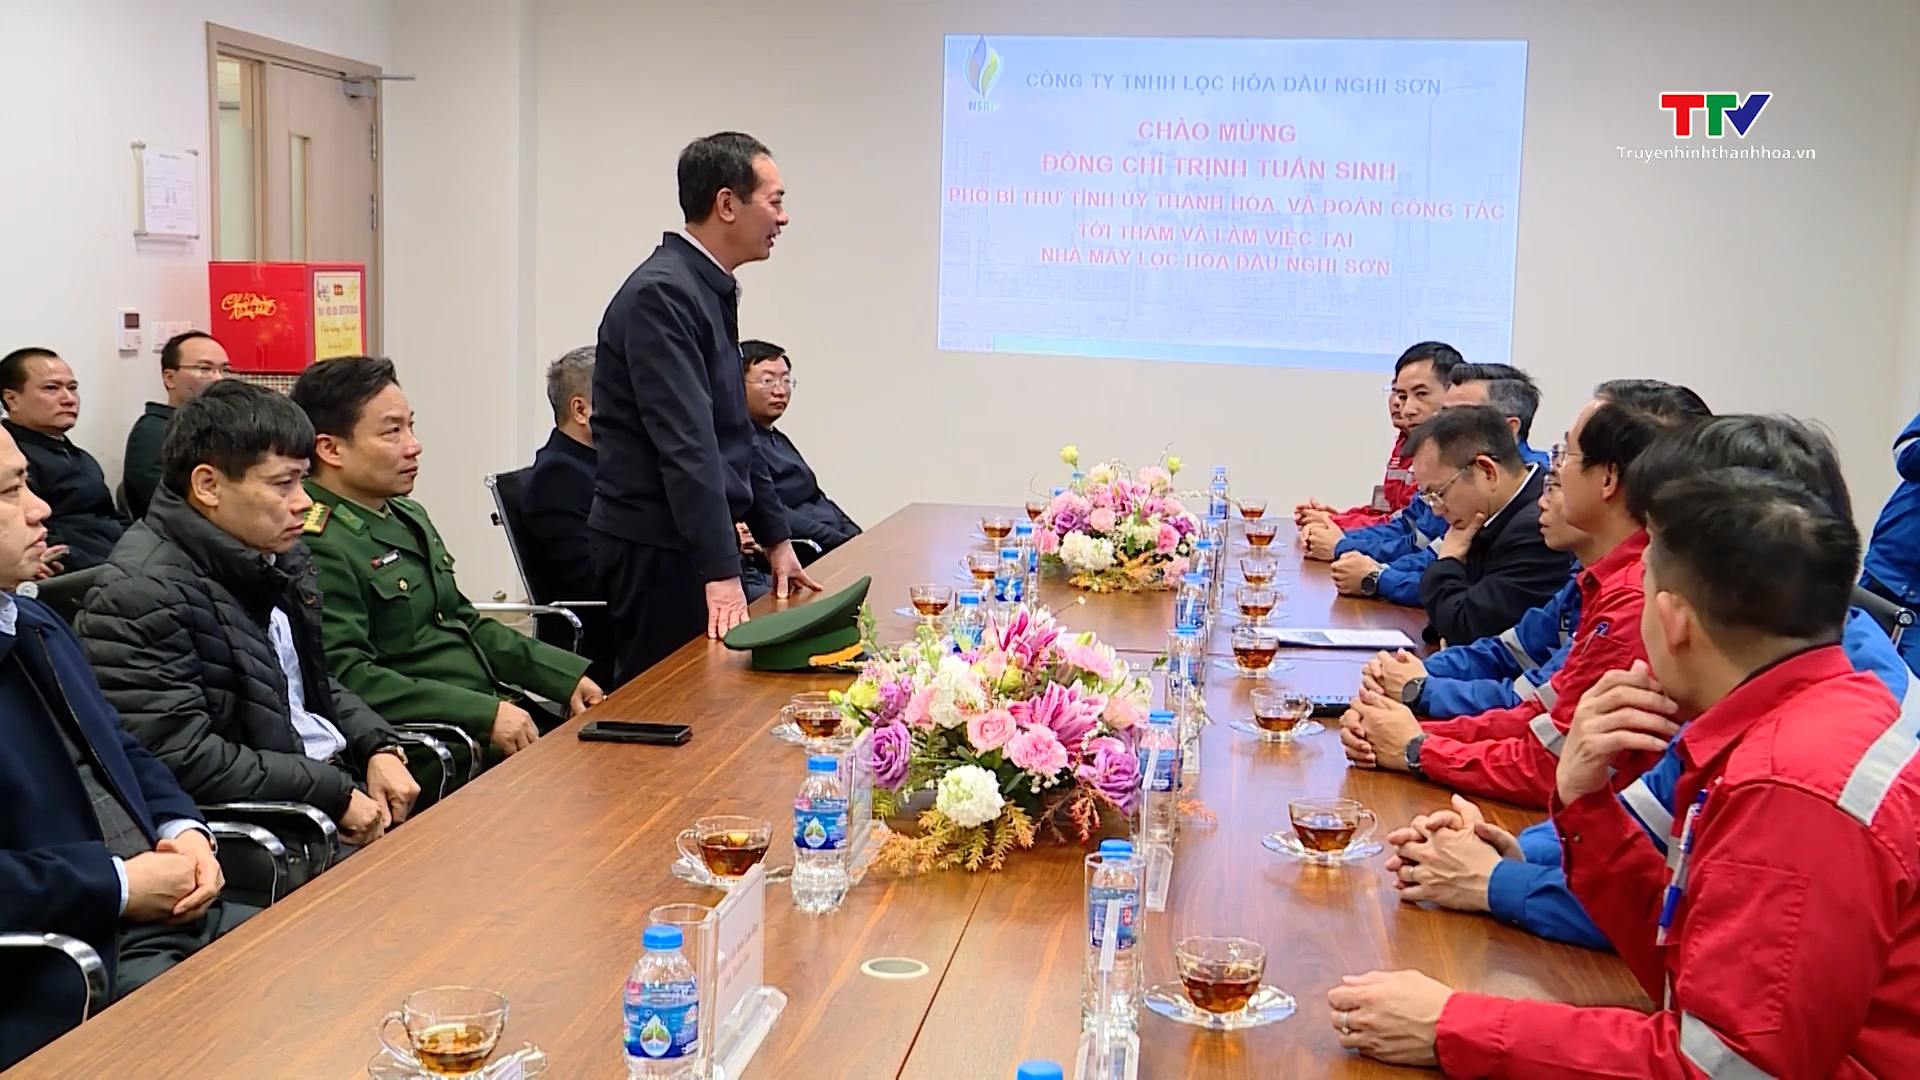 Phó Bí thư Tỉnh uỷ Trịnh Tuấn Sinh kiểm tra tình hình đời sống, sản xuất tại thị xã Nghi Sơn- Ảnh 4.